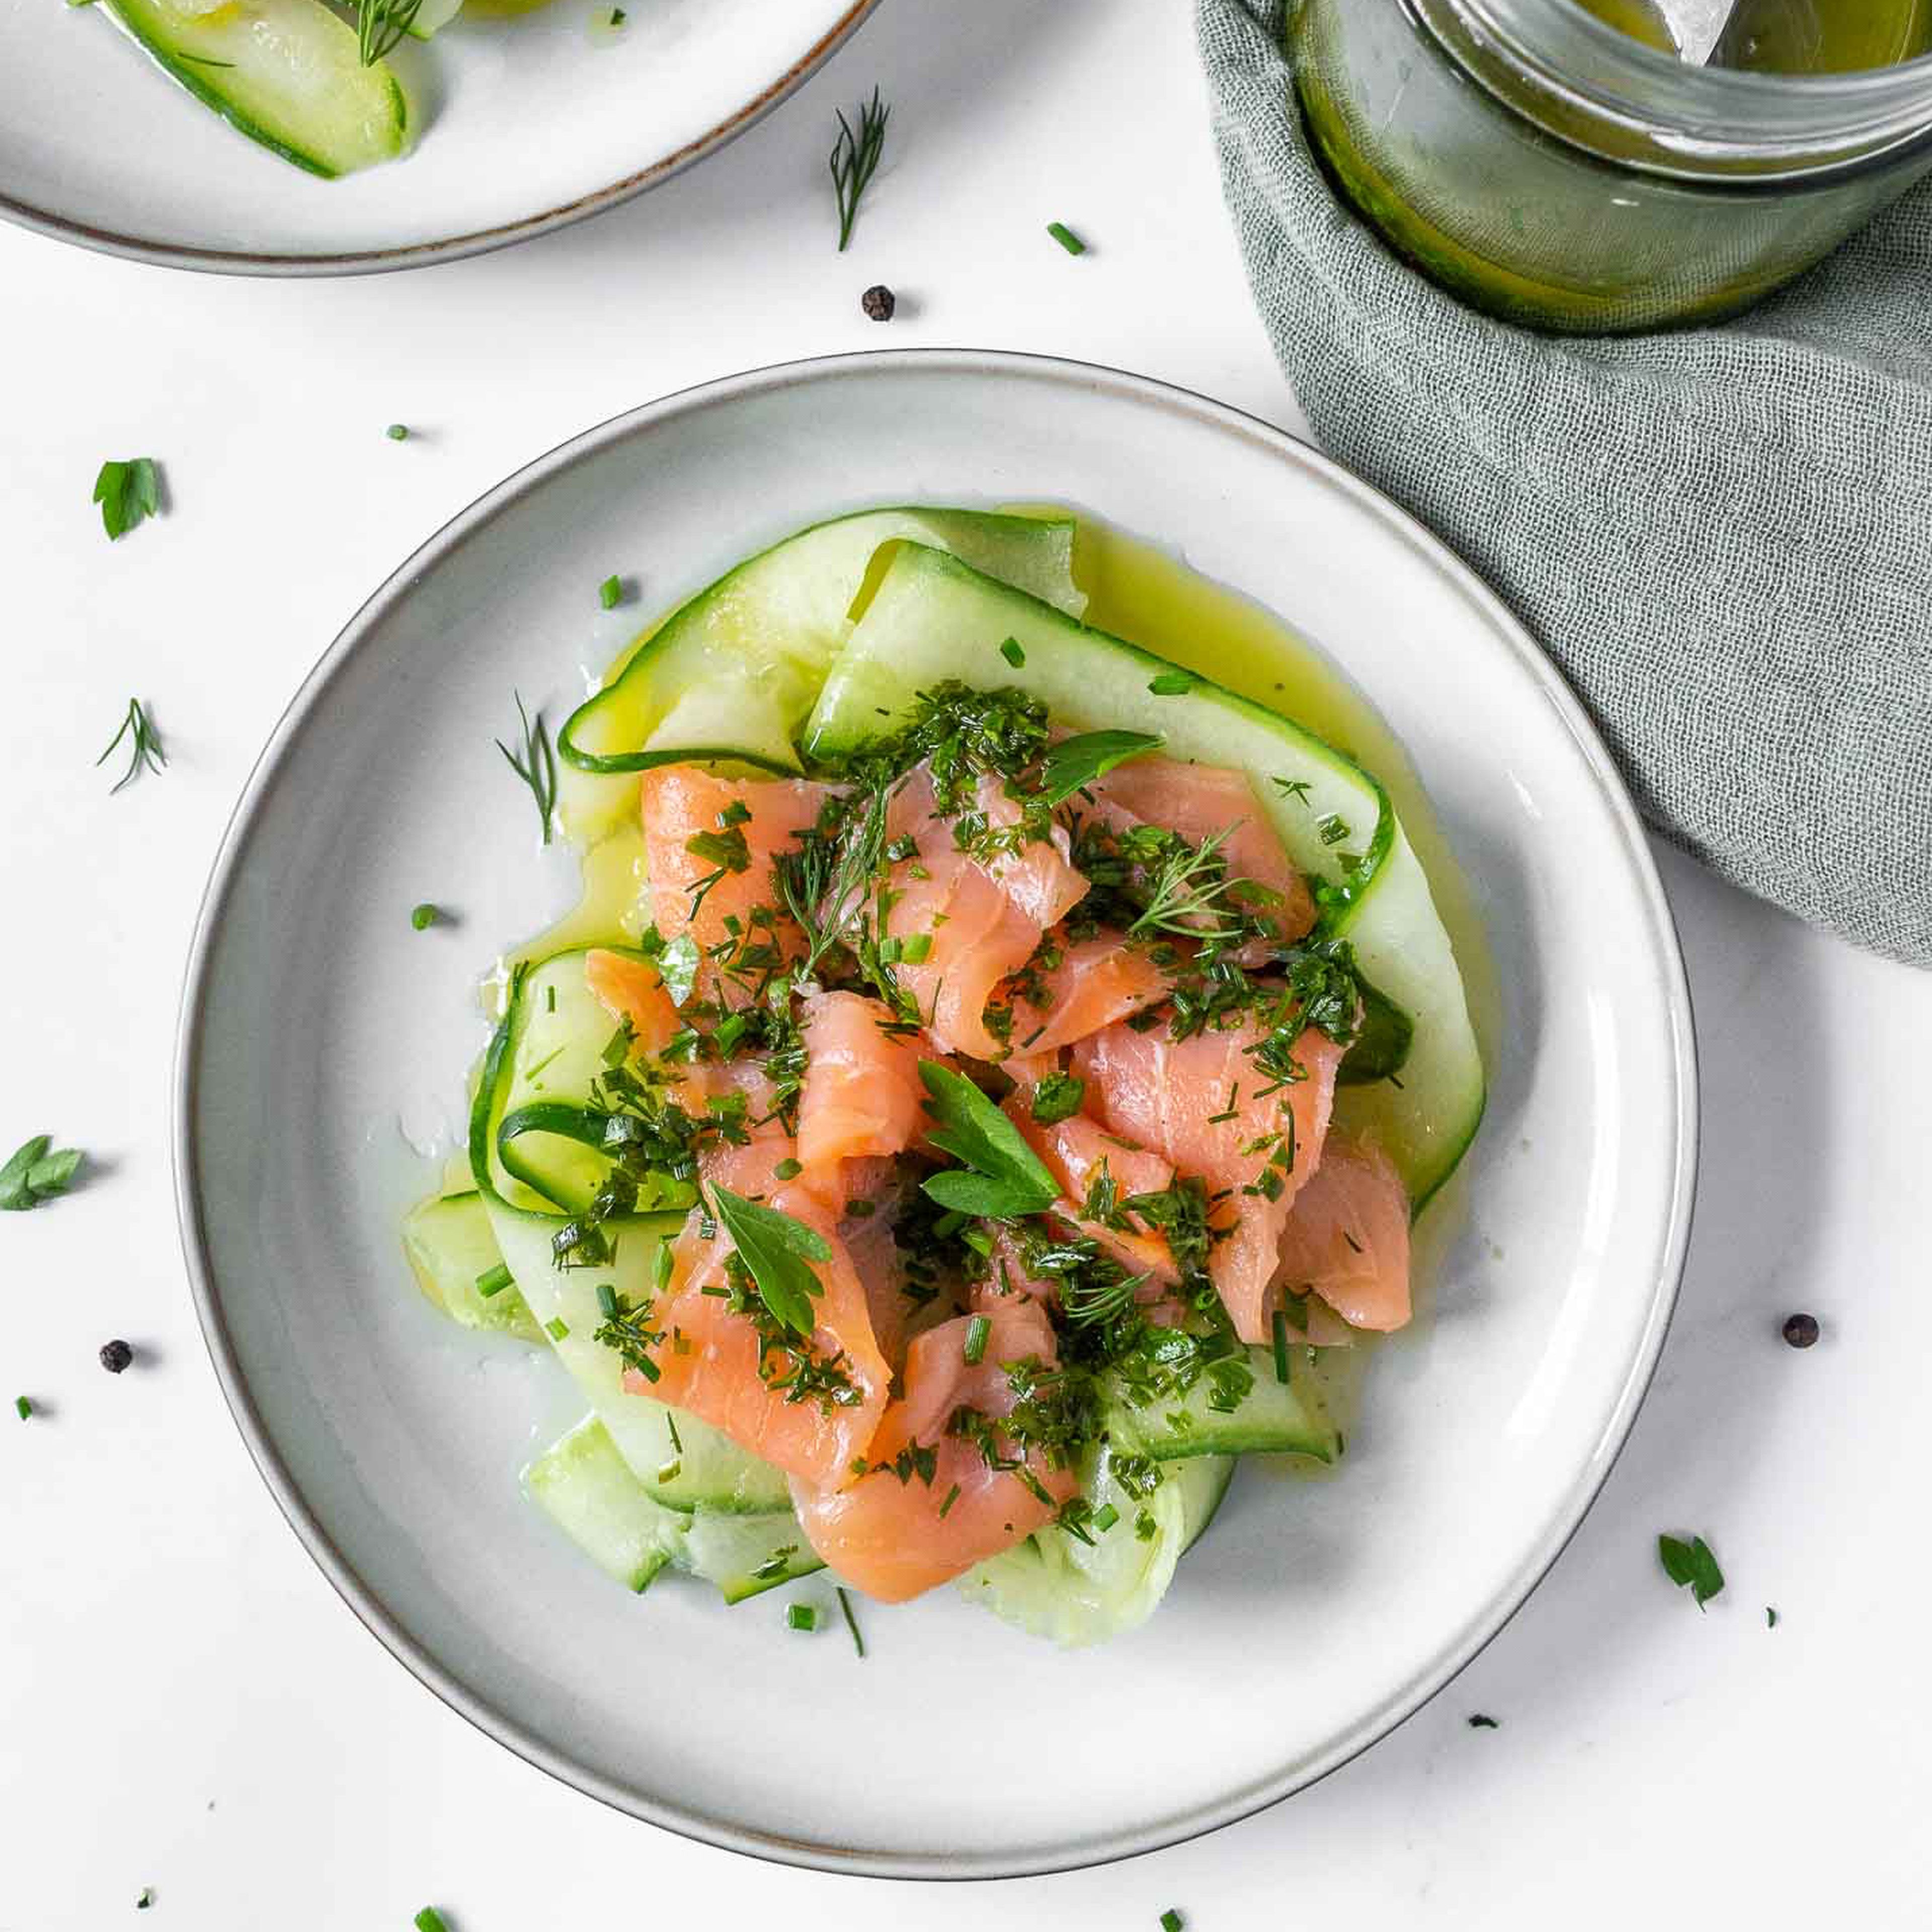 Smoked Salmon Salad with Herb Vinaigrette